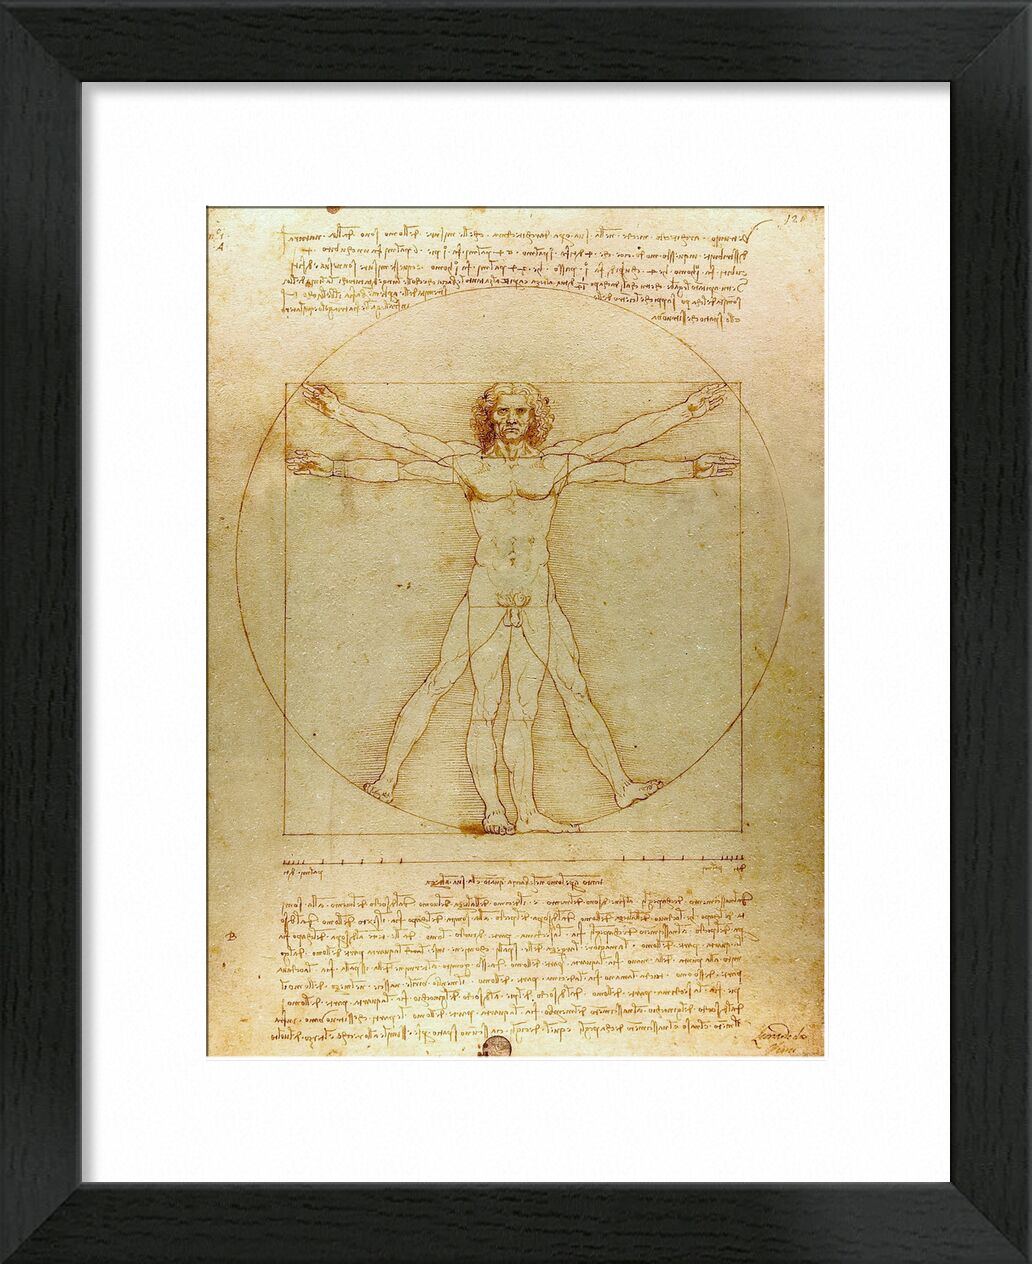 Vitruvian Man - Leonardo da Vinci desde Bellas artes, Prodi Art, hombre, naturaleza, De Vinci, dibujo, lápiz, Leonard da vinci, geometría